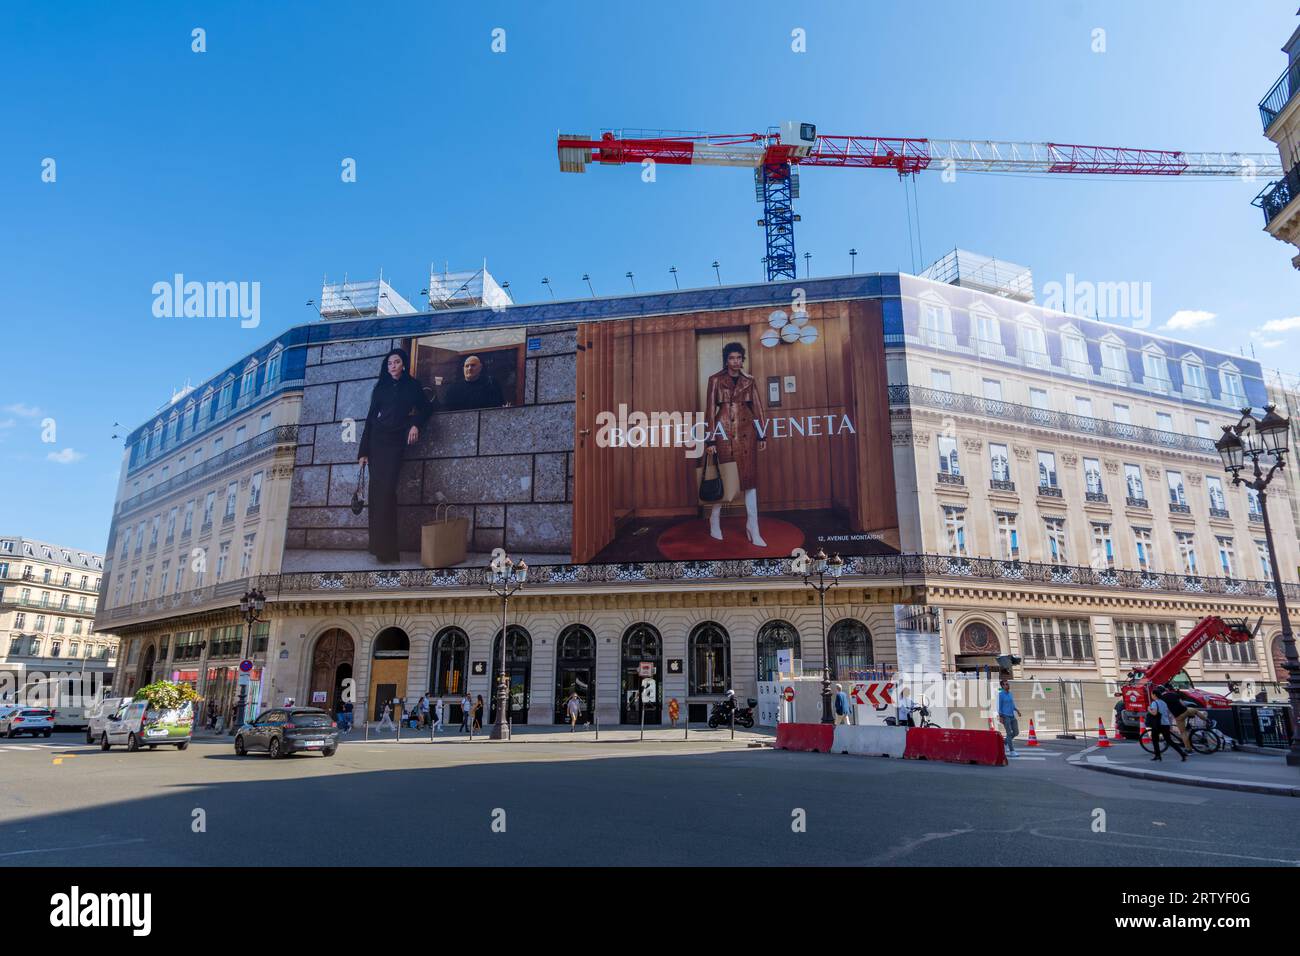 Bottega Veneta cartellone pubblicitario gigante che copre le impalcature dei lavori di restauro sulla facciata di un edificio parigino Foto Stock